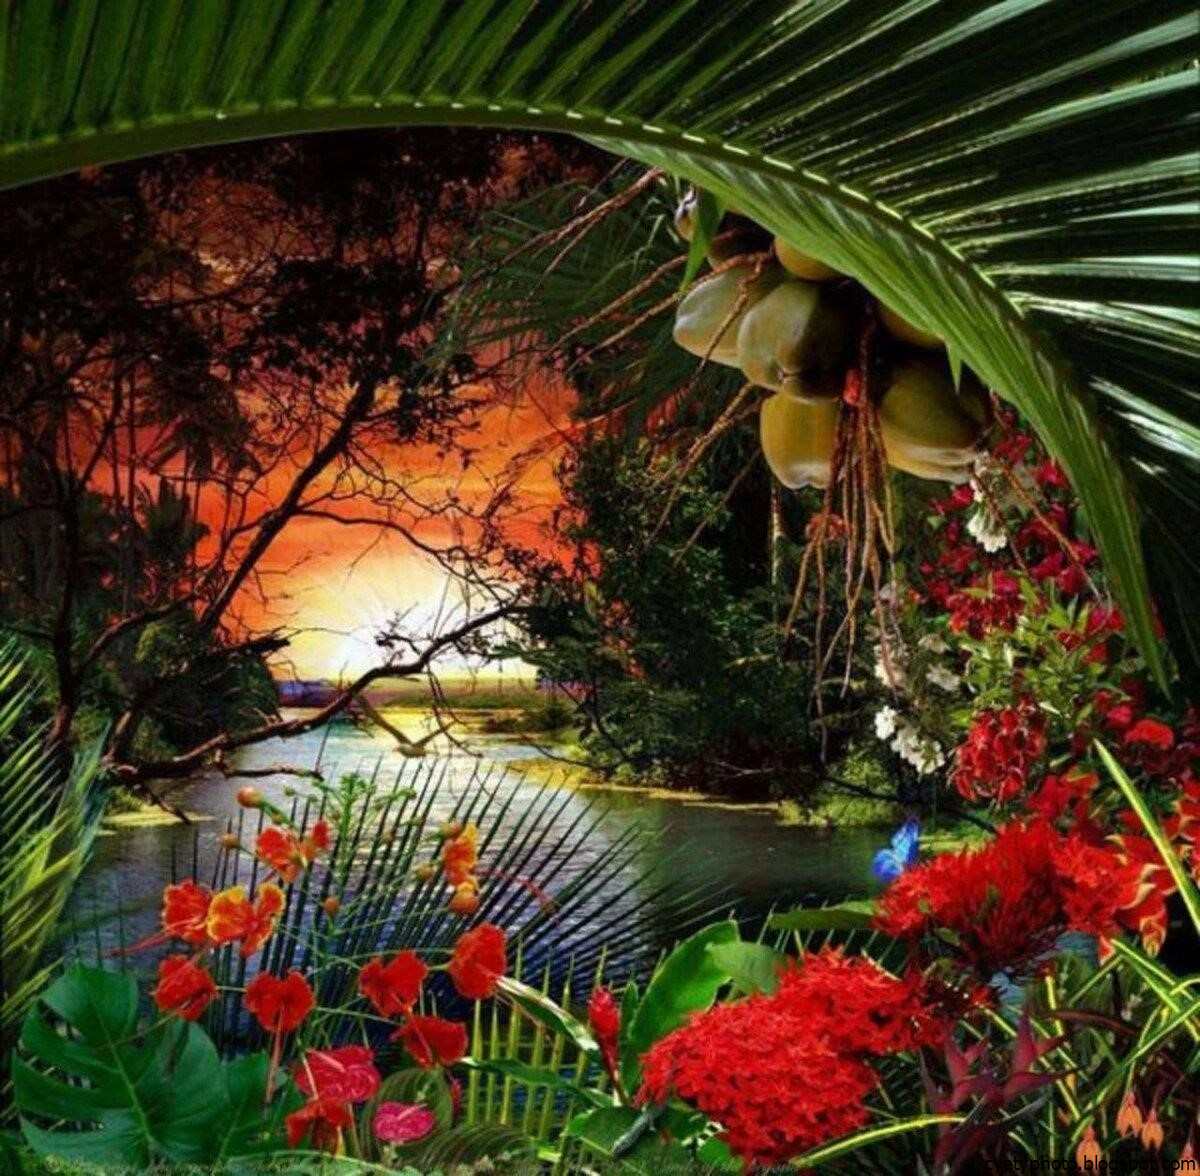 Flowers paradise. Тропические цветы. Экзотическая природа. Красивый пейзаж. Красивые тропические сады с цветами.